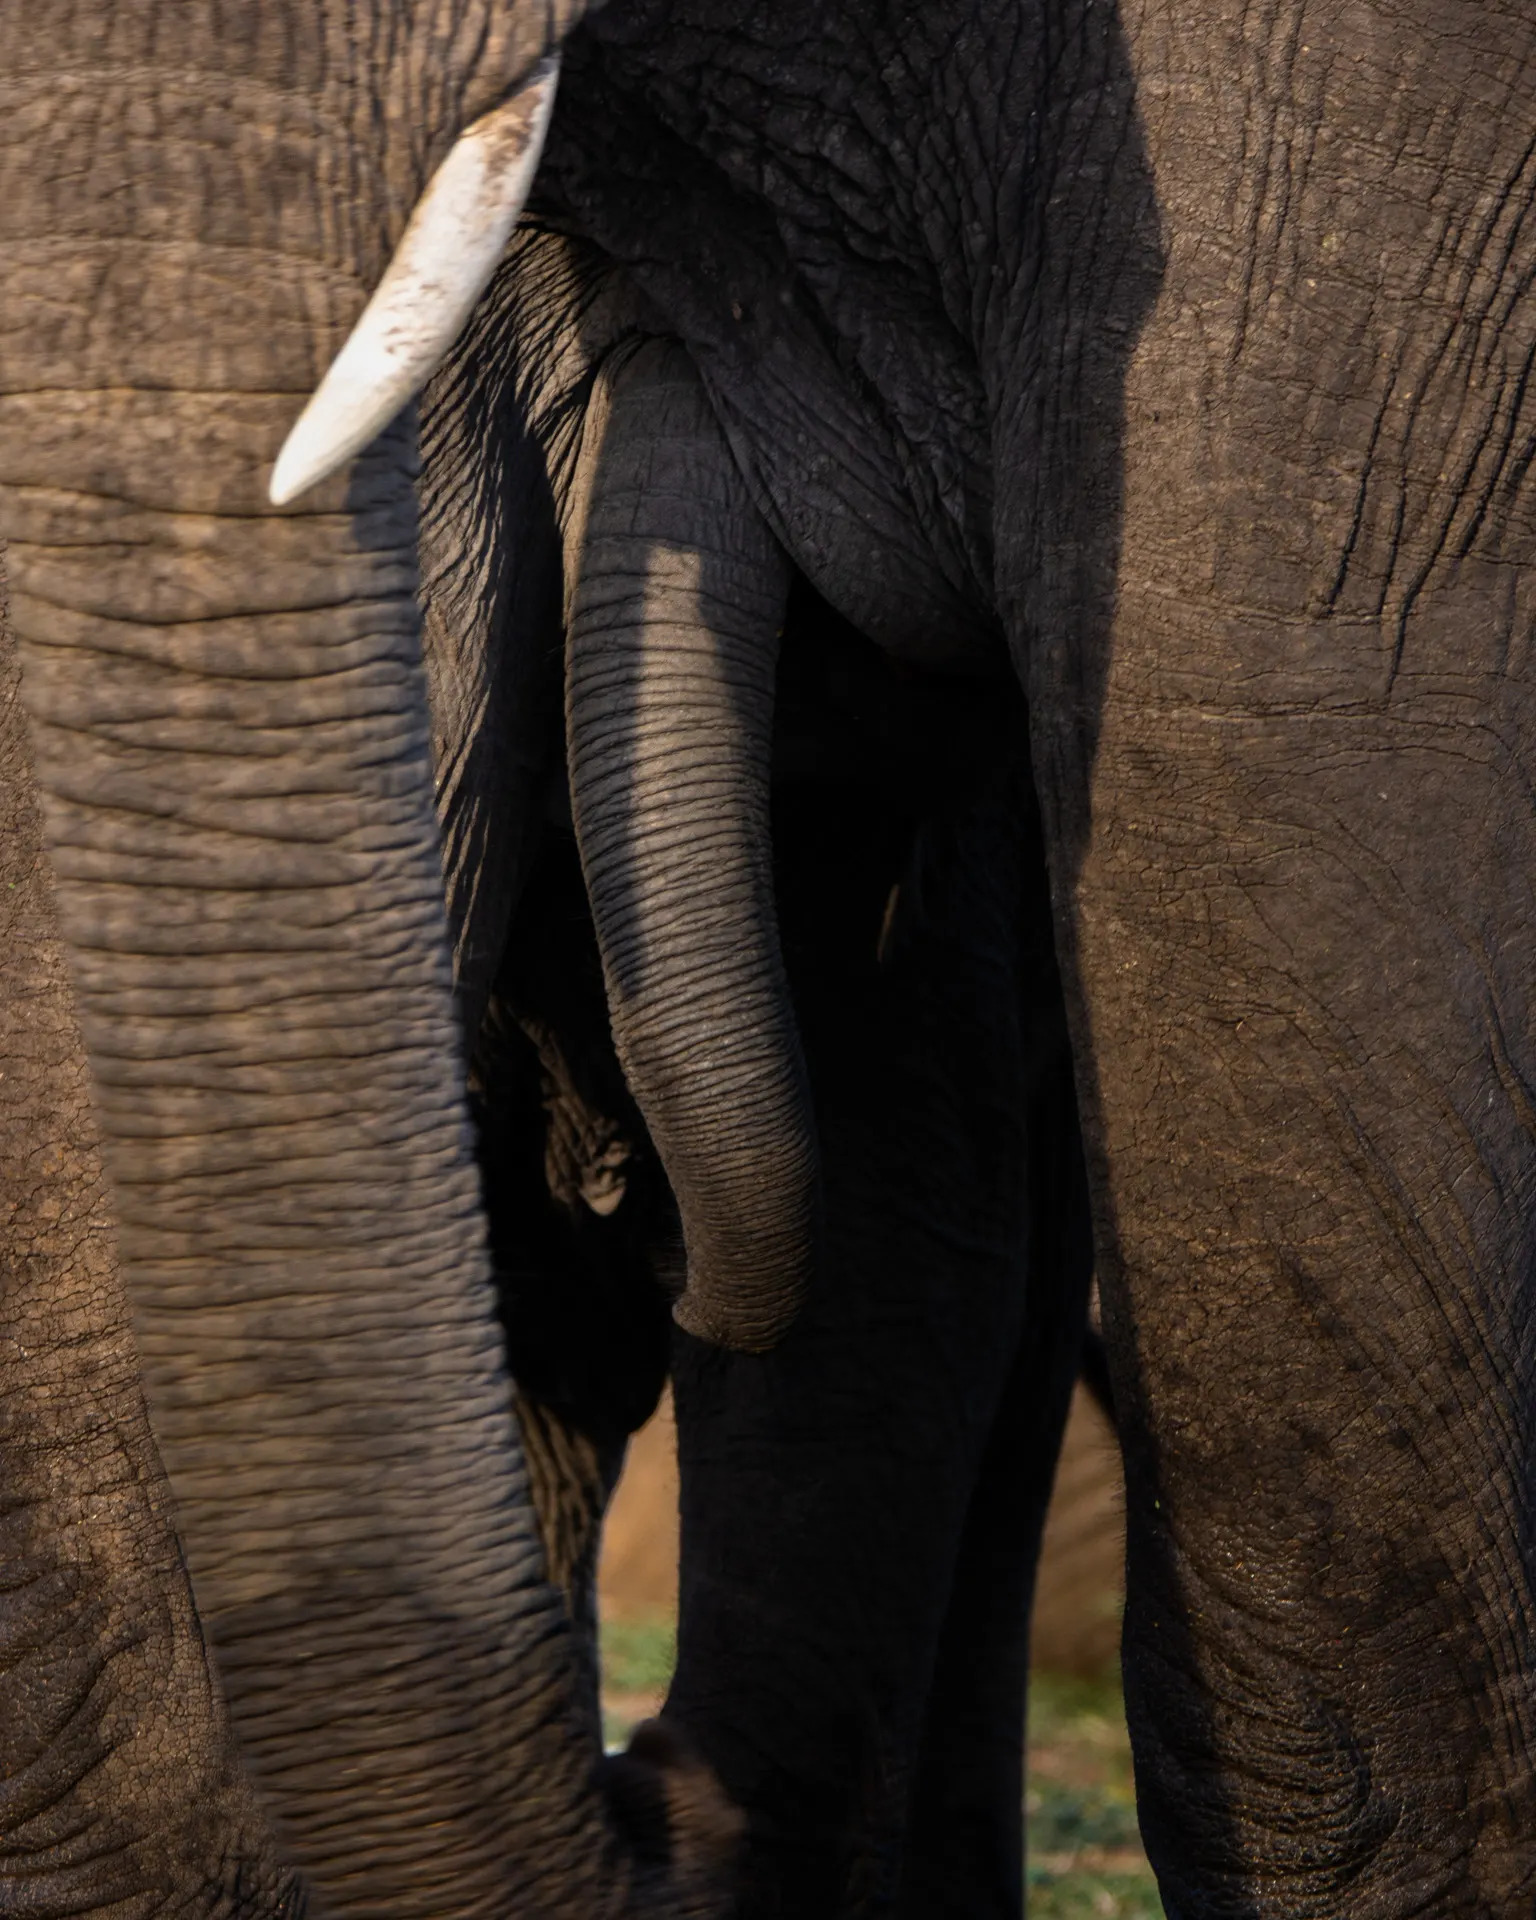 Elephant trunk